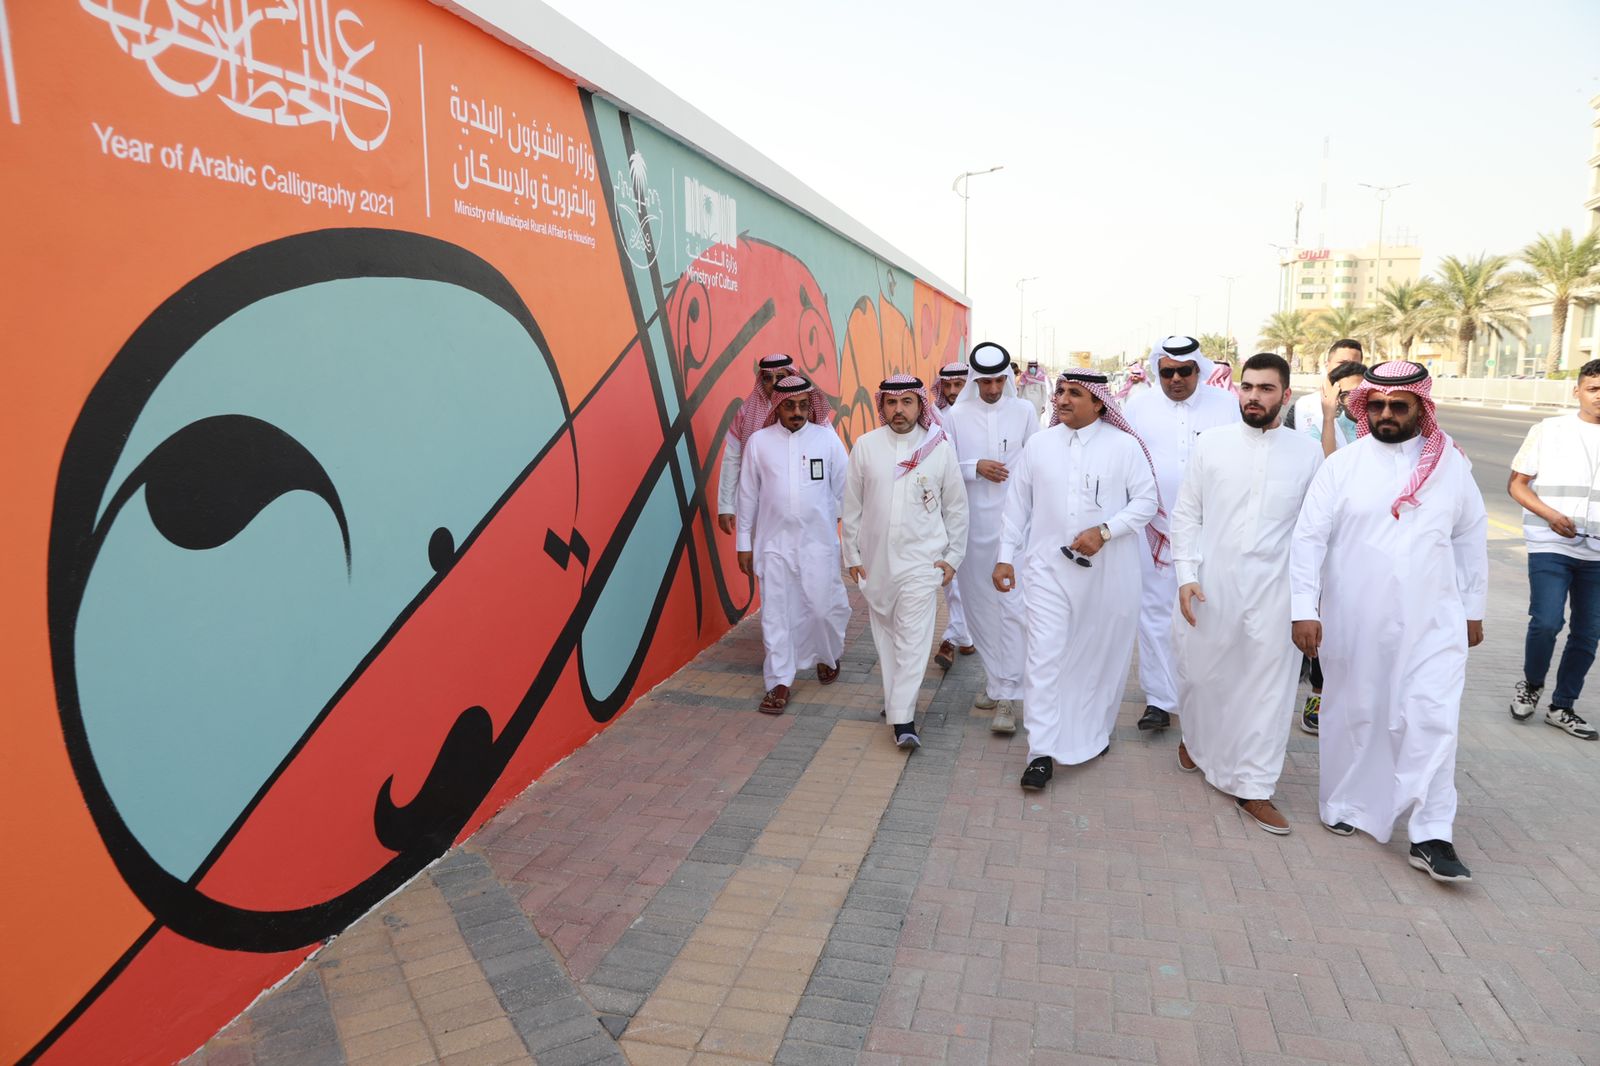 بشراكة مجتمعية بين وزارة الثقافة والشؤون البلدية تنفيذ جدارية "الخط العربي" على مساحة 300 متر  بطريق الملك سلمان في الاحساء 